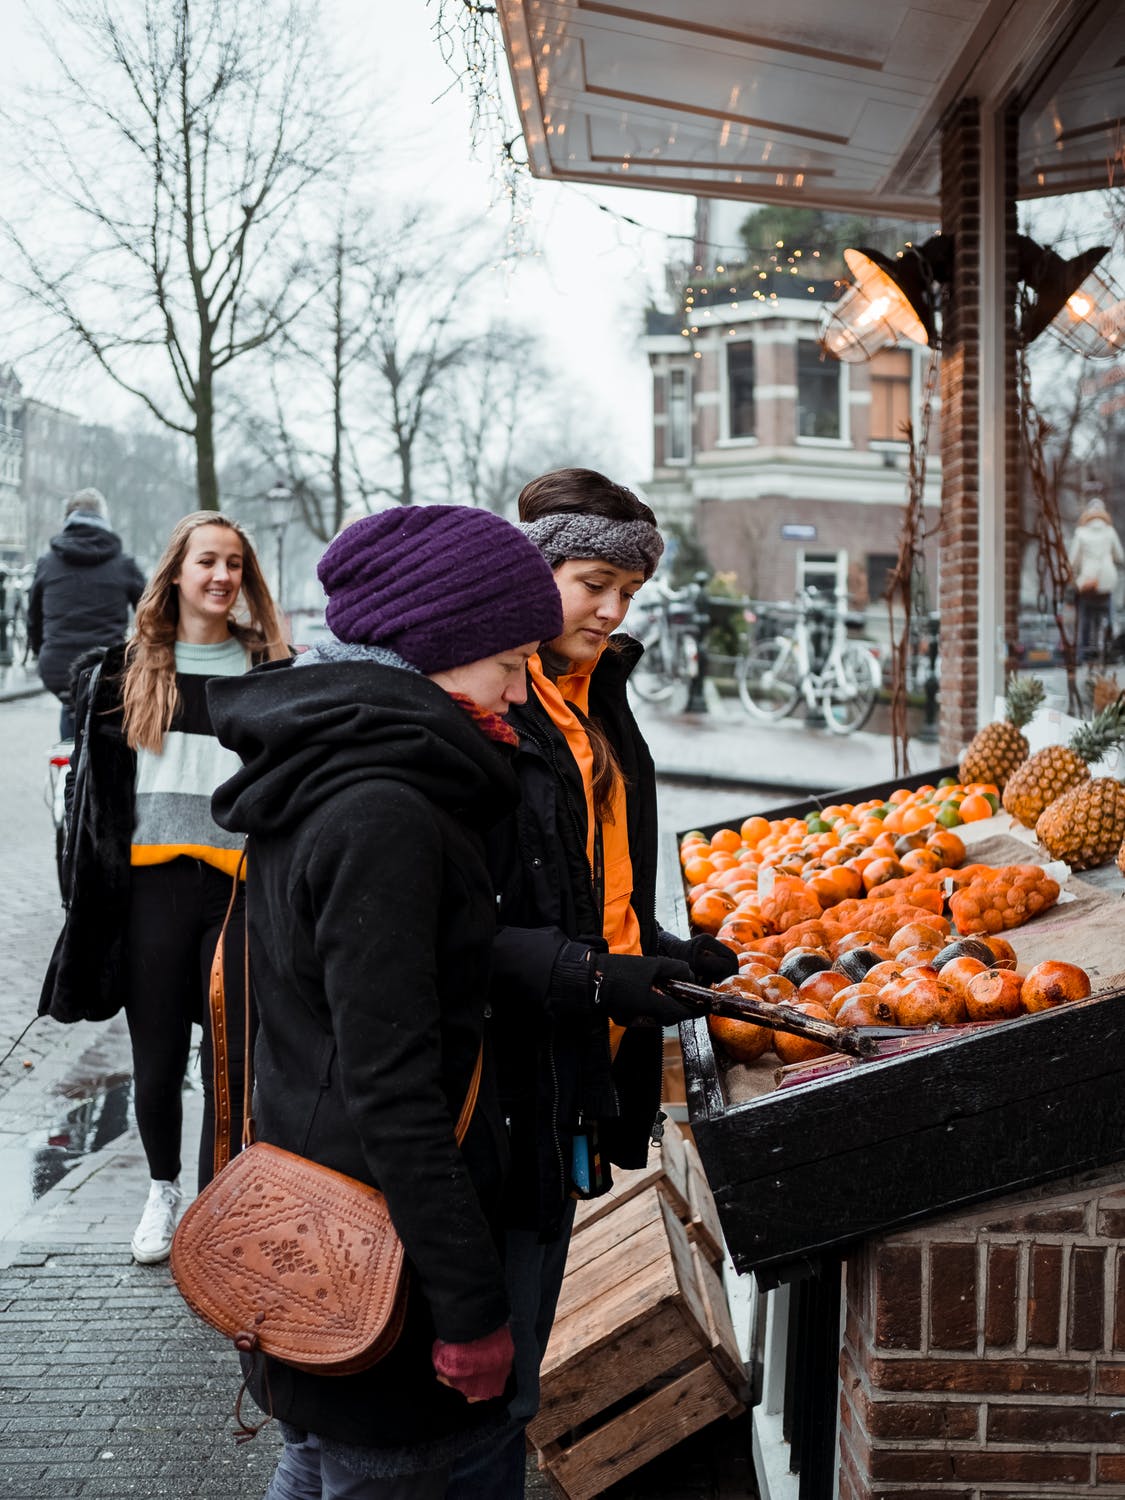 vrouwen-op-markt-in-de-winter-oranje-stad-muts-winterjas-prima-chick-op-achtergrond